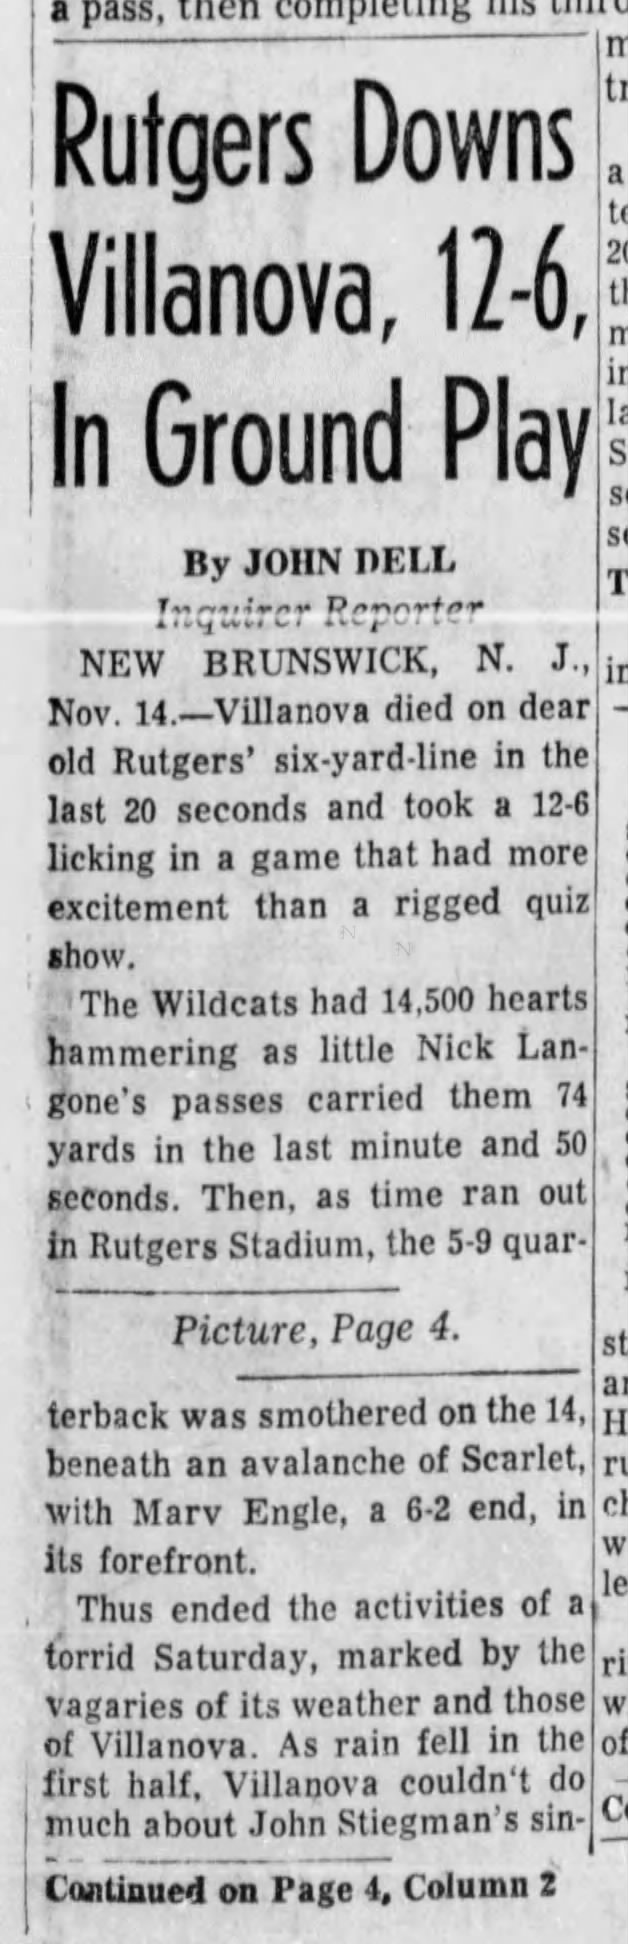 1959 Rutgers-Villanova